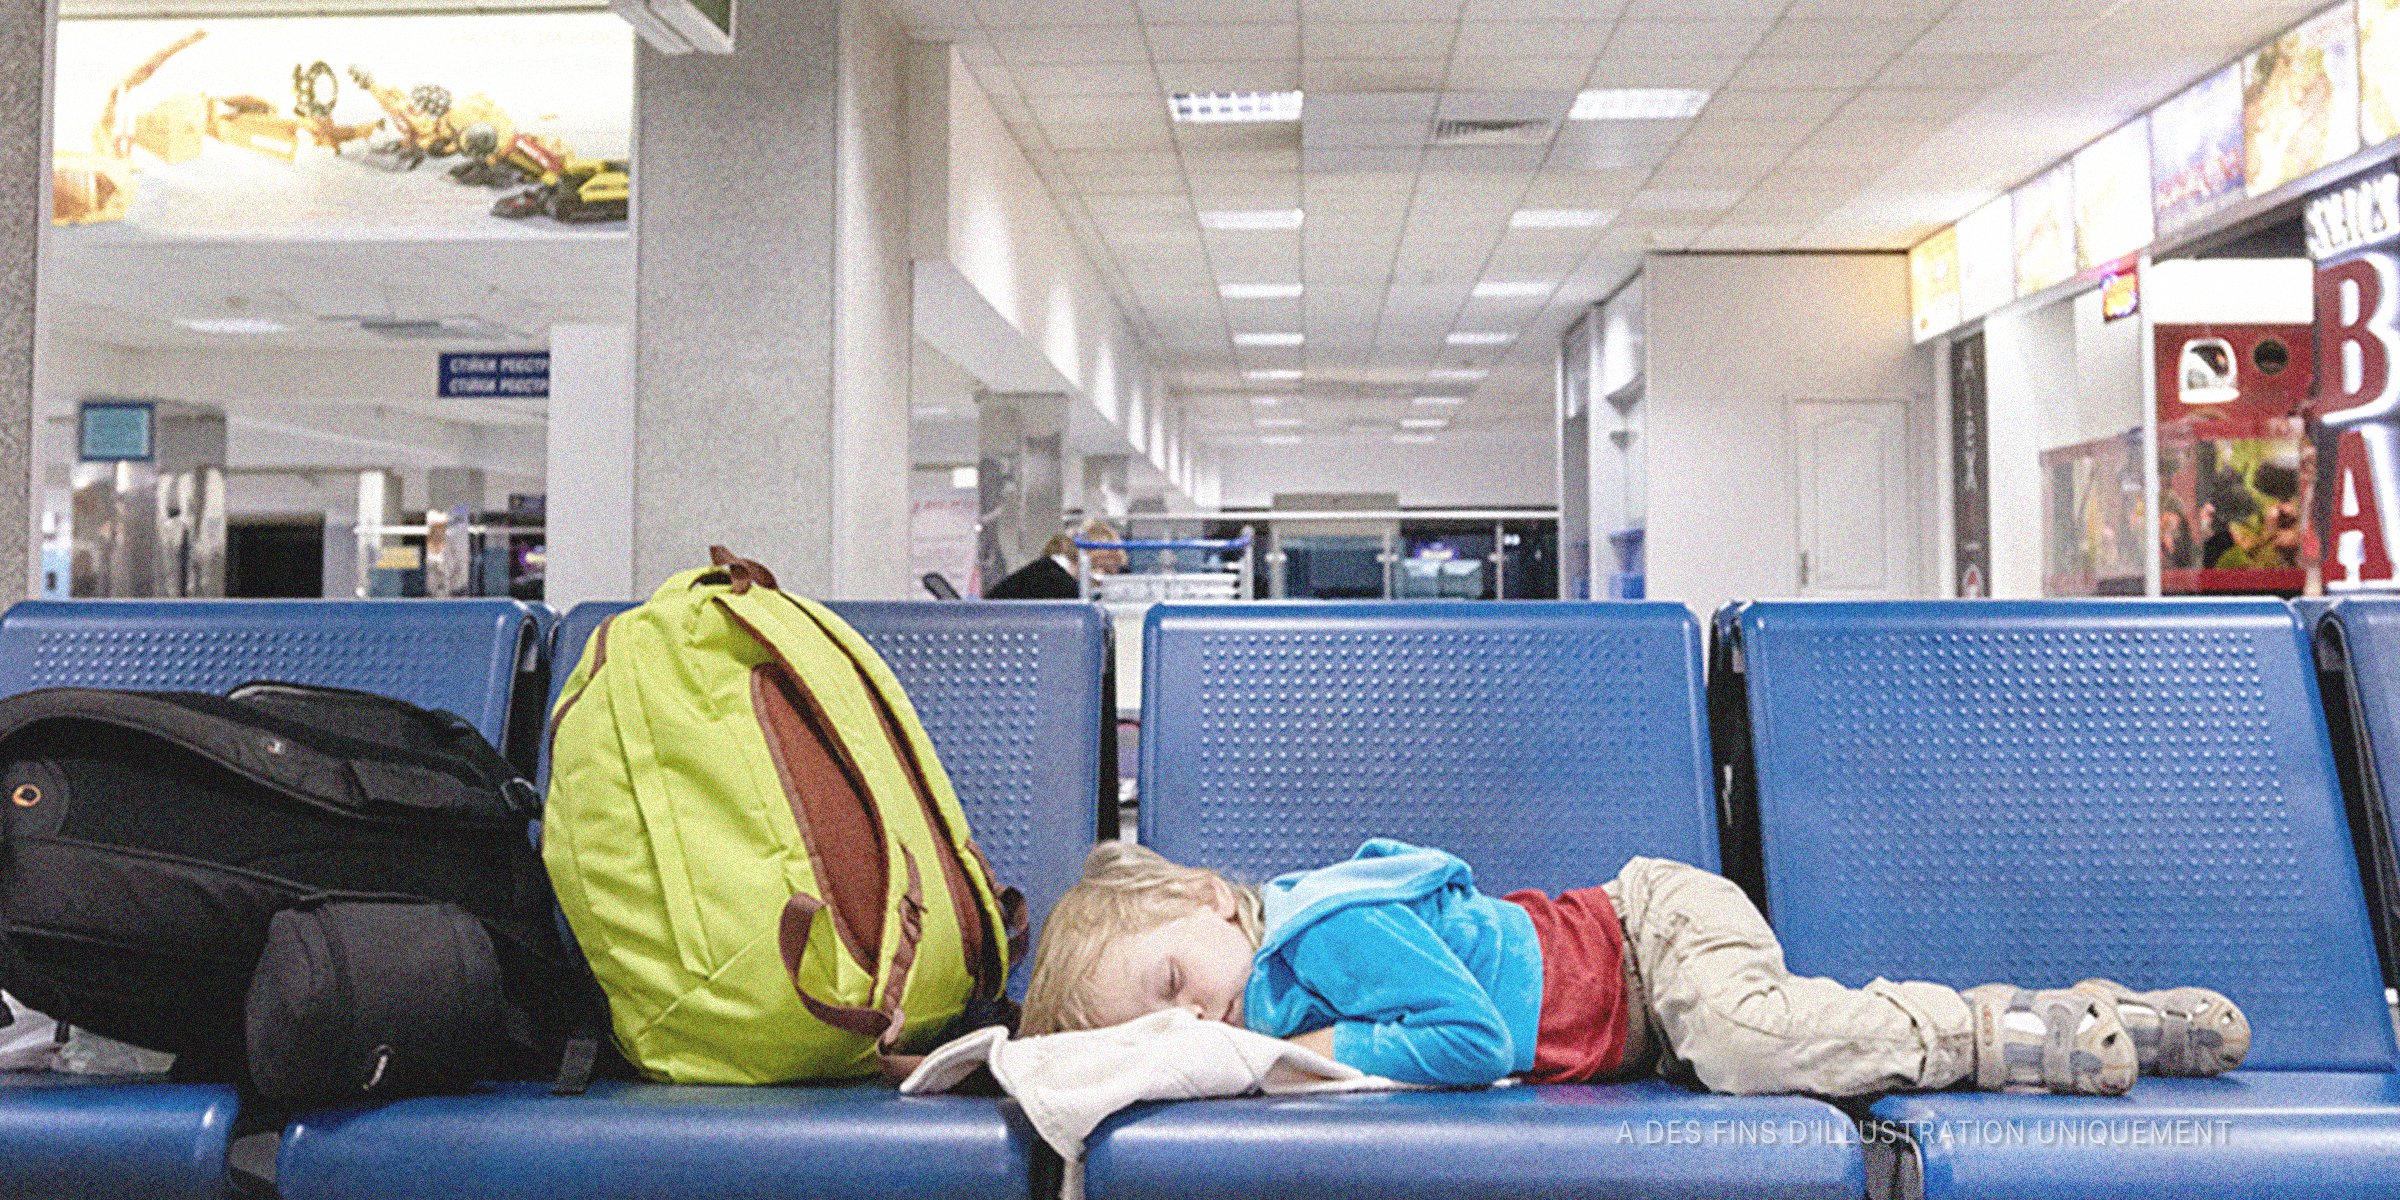 Un petit garçon dormant sur les sièges d'un aéroport | Source : Shutterstock  